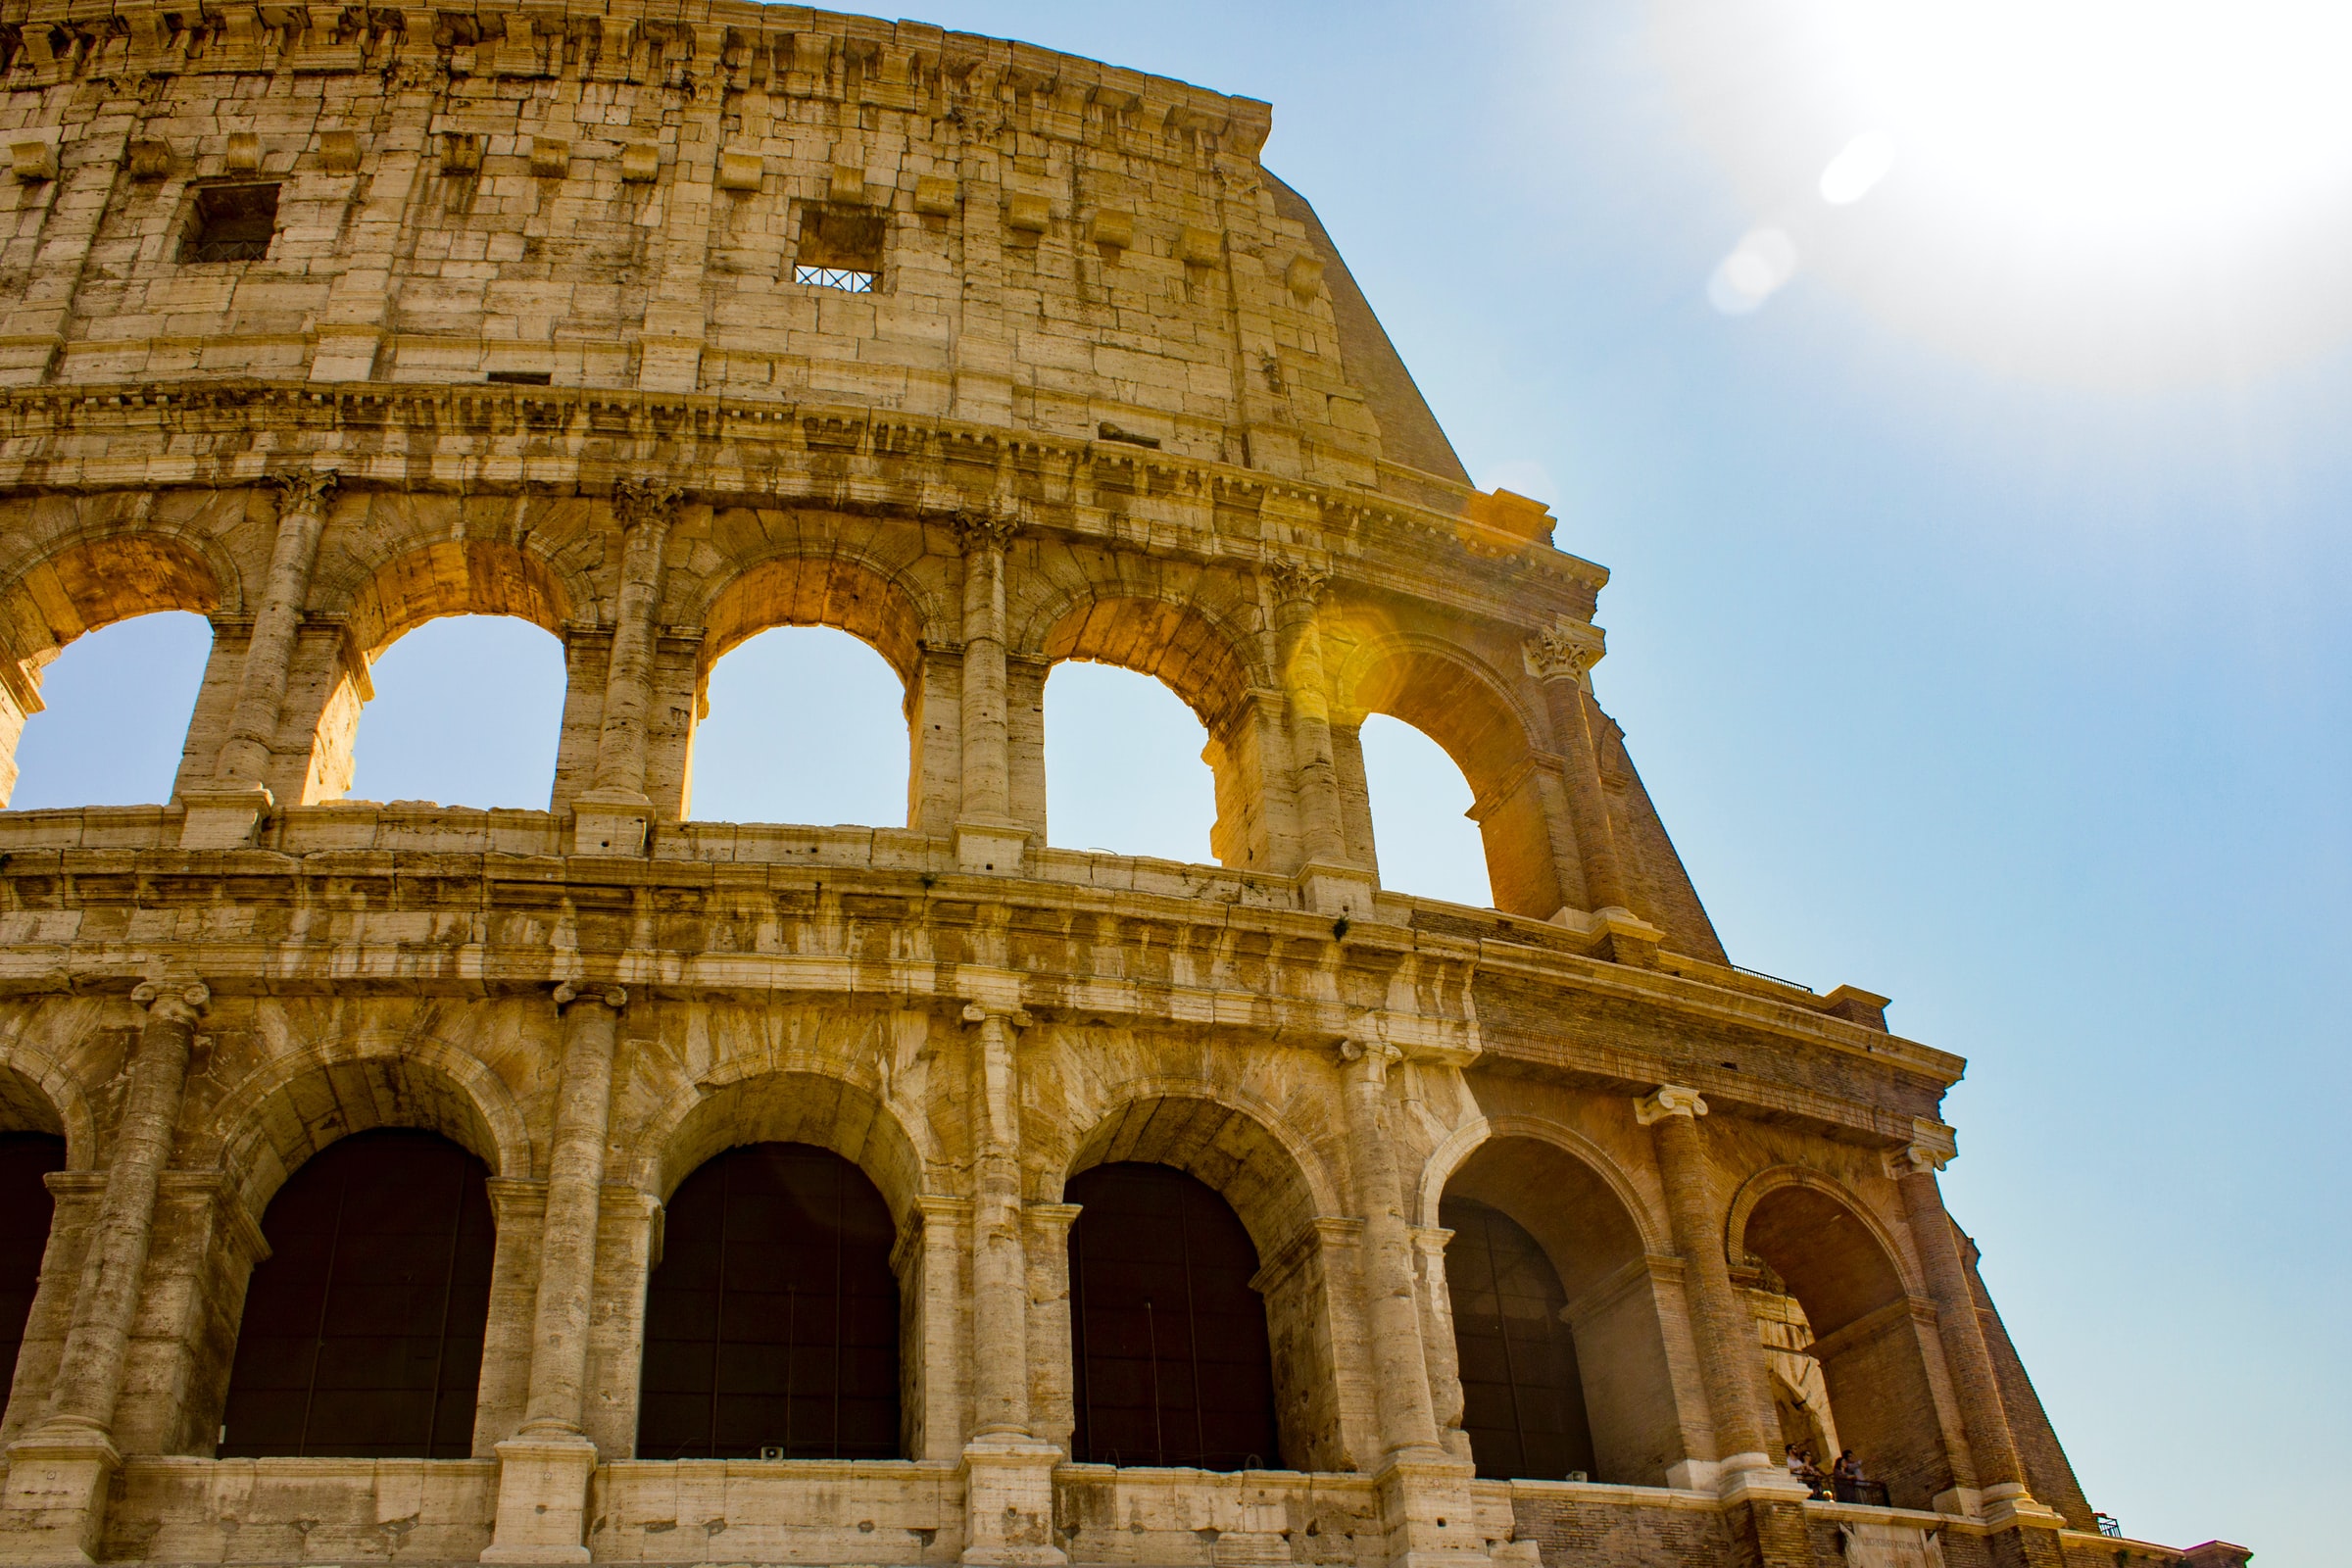 Colosseum closeup